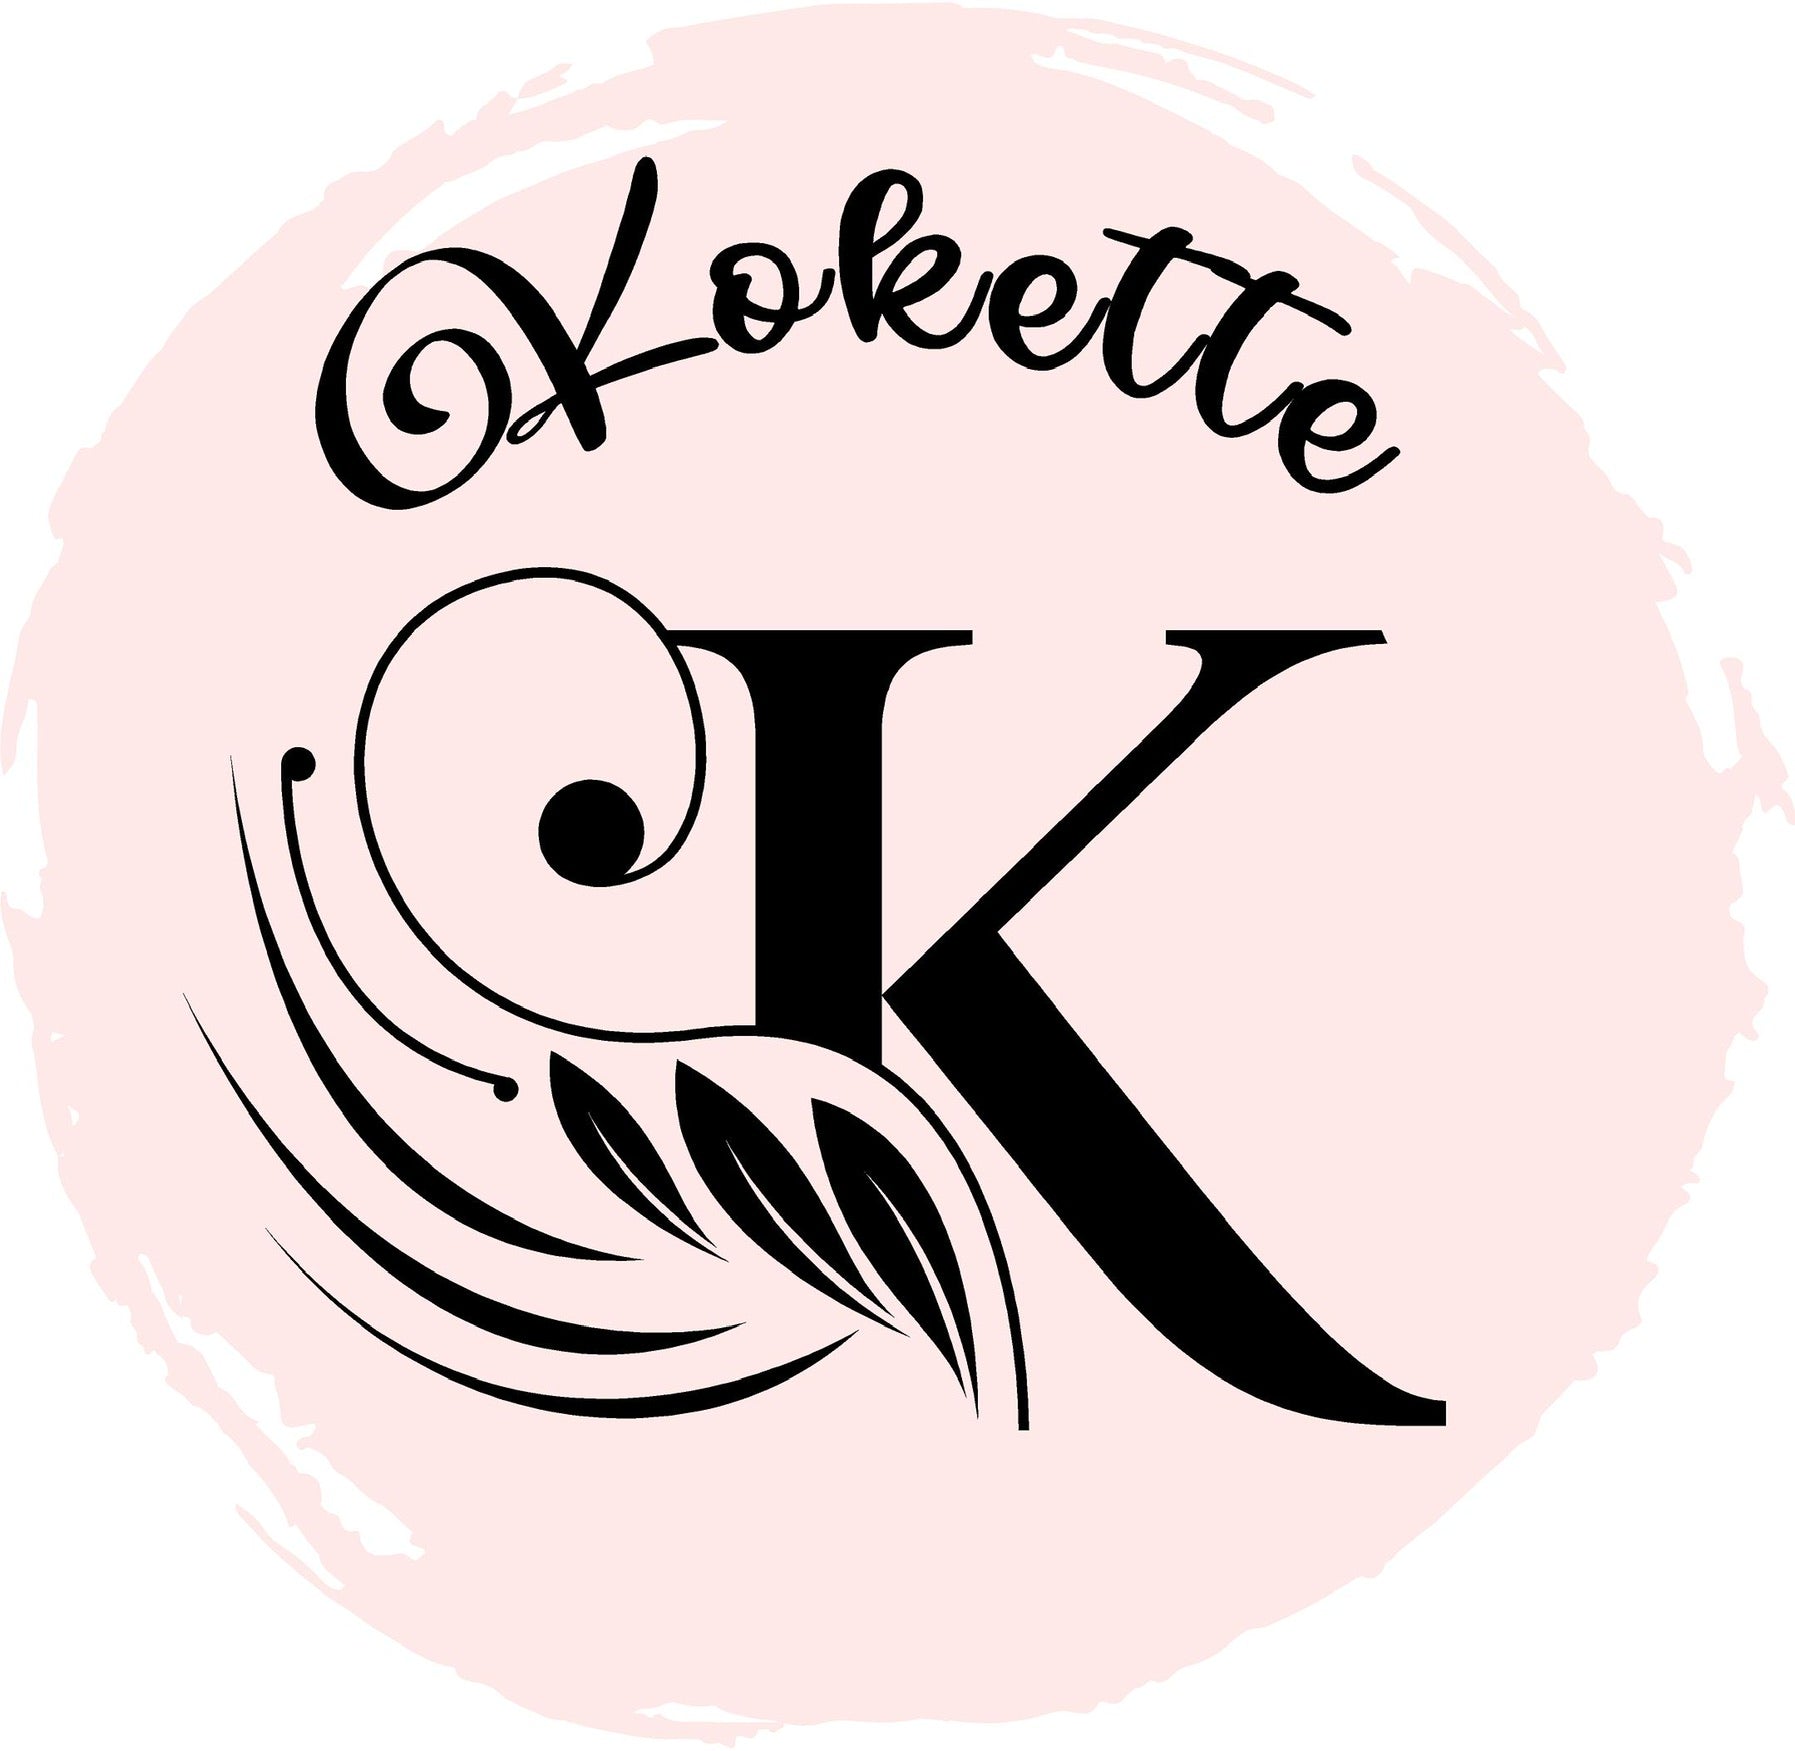 Logo Kokette